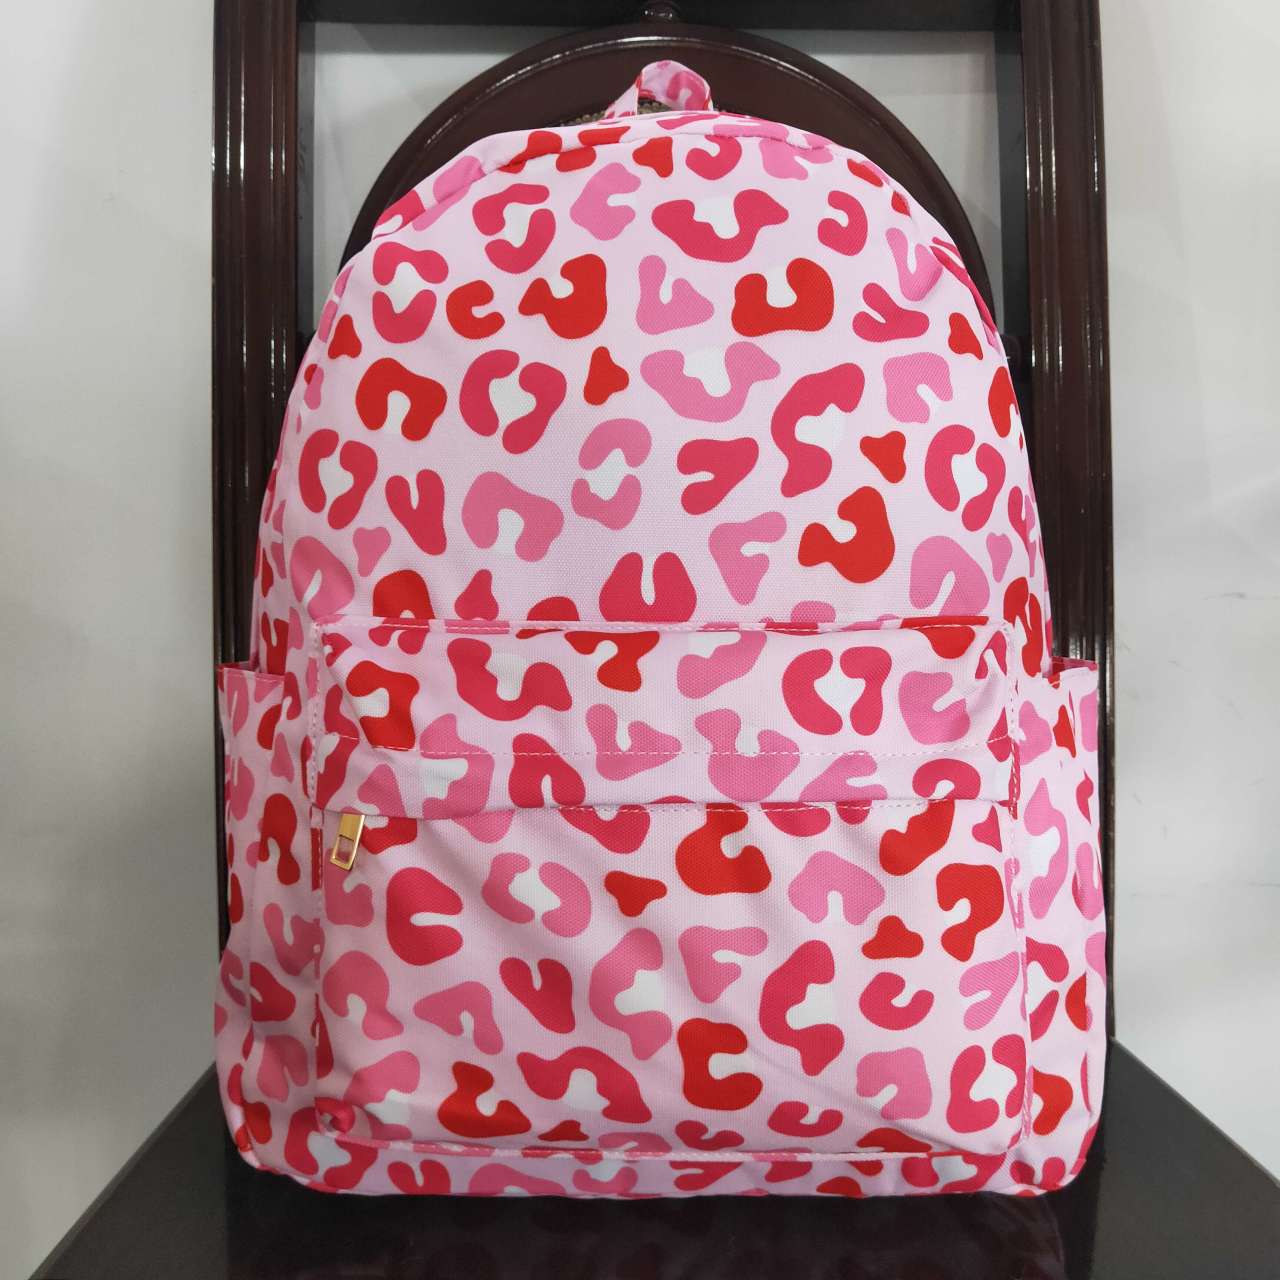 BA0150 RTS toddler backpack pink leopard girl gift back to school preschool bag travel backpack